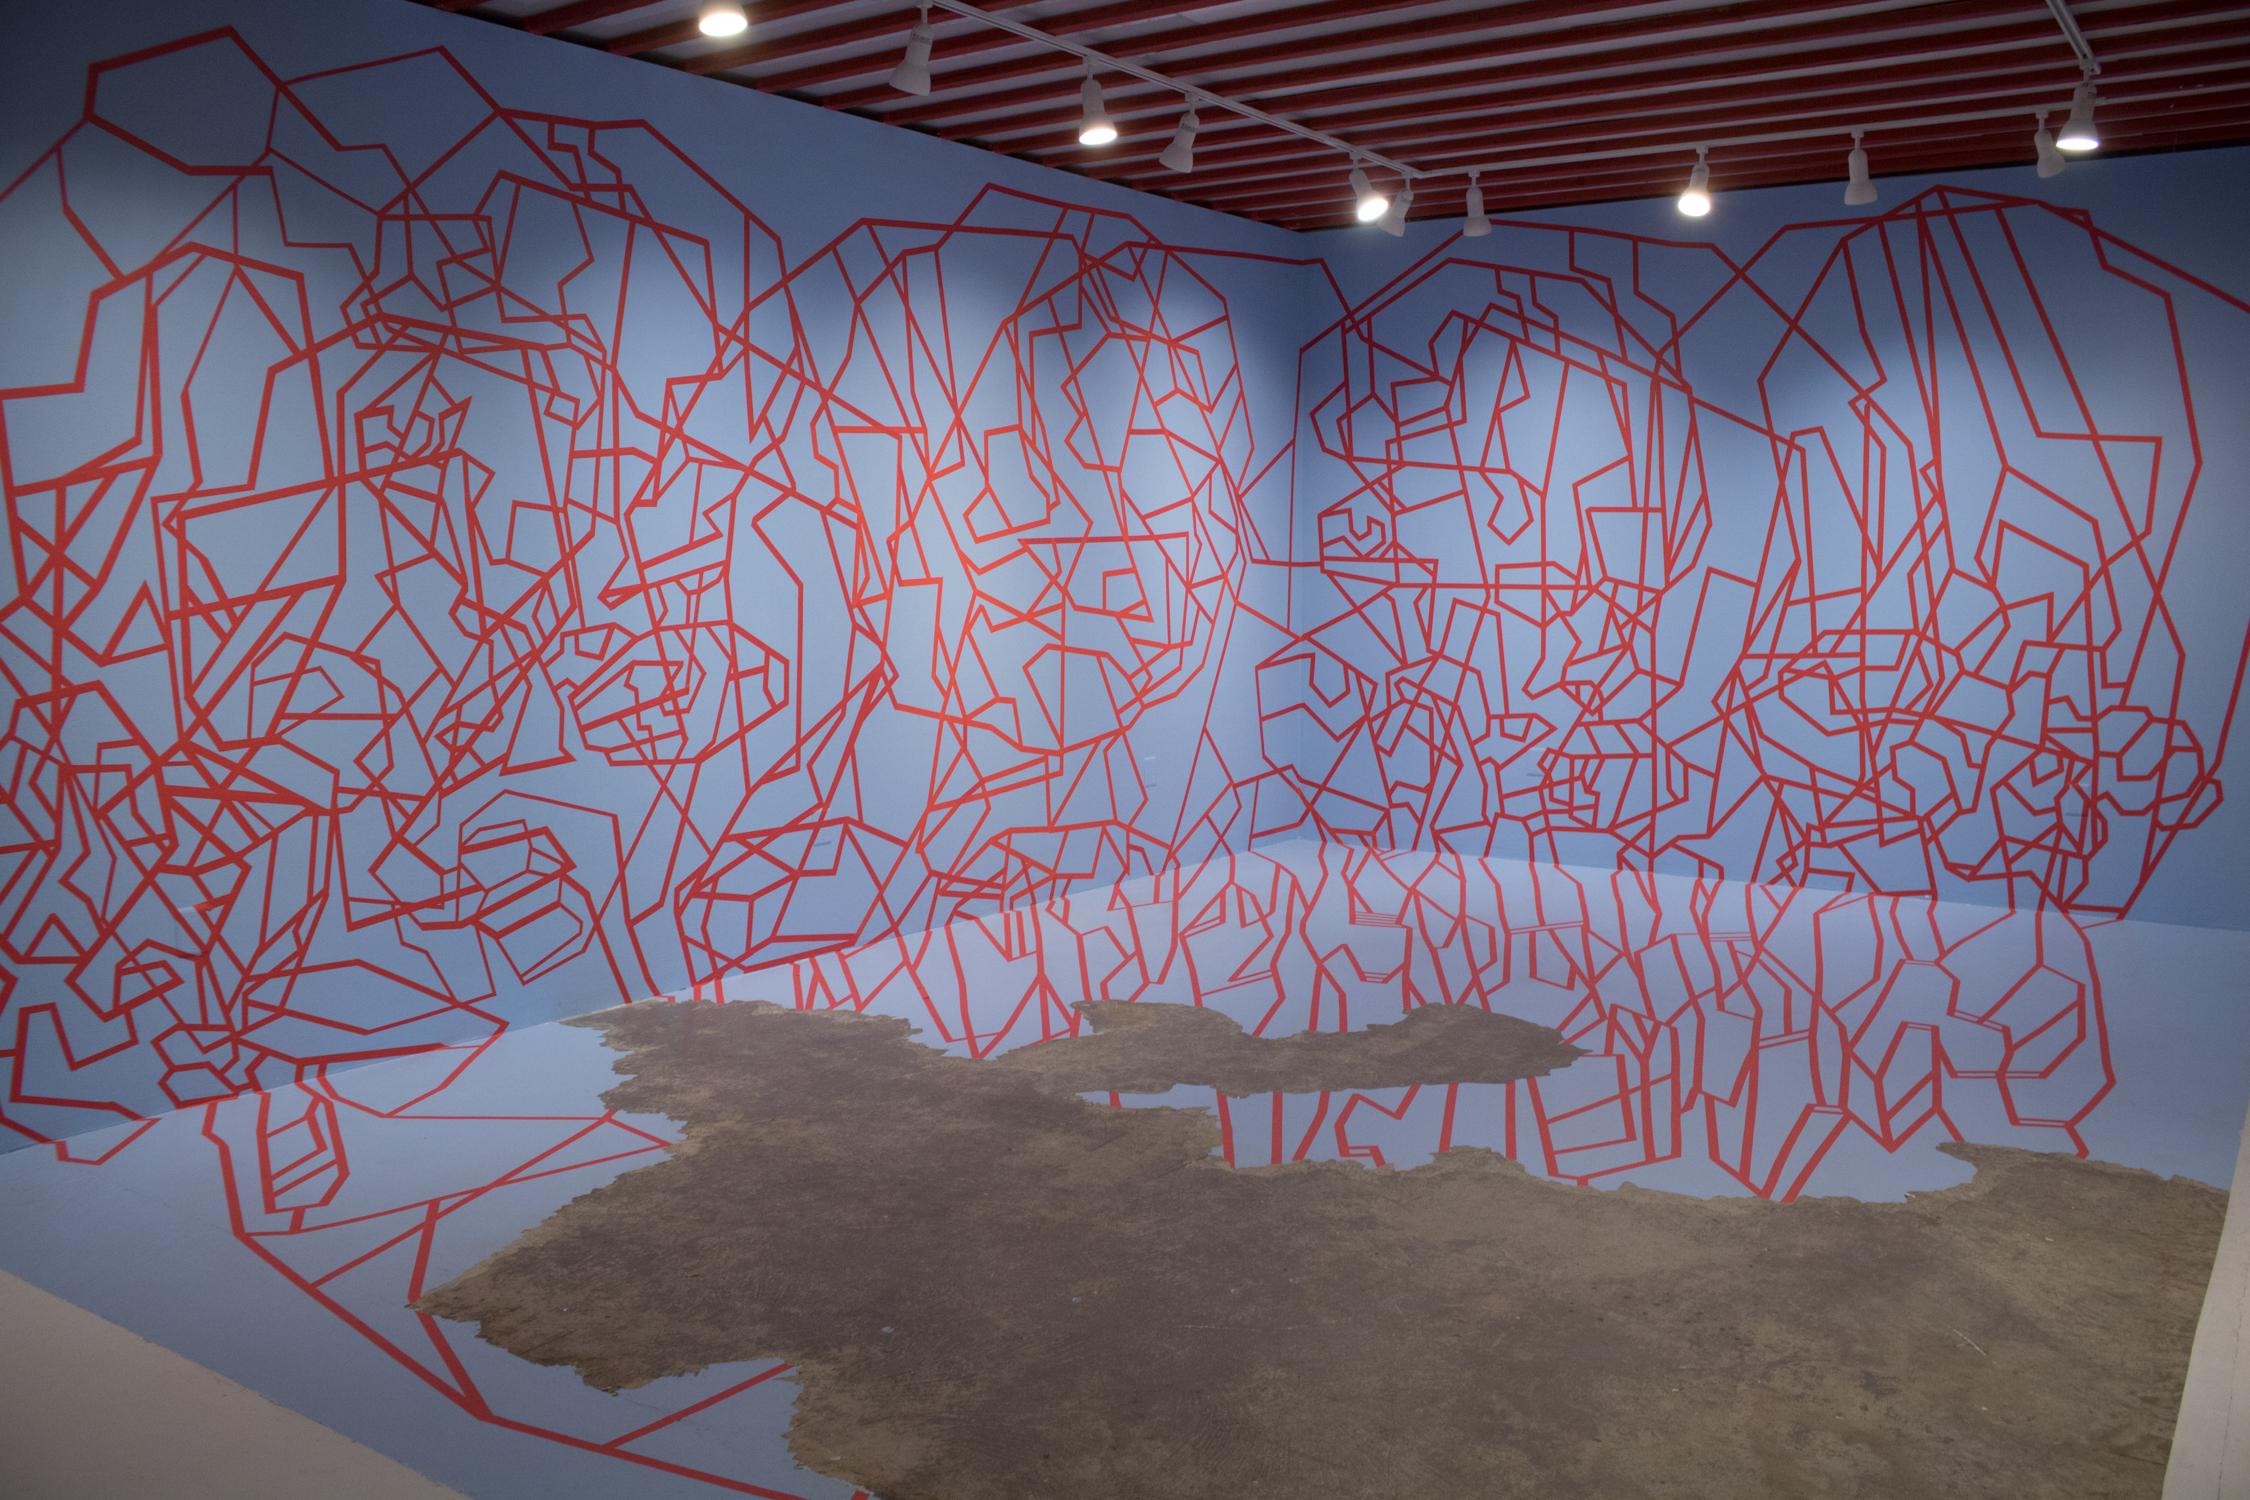 "Cutting Edge" ist eine Installation von Dustin Hedrick, die aus Farbe und Klebeband besteht. Das rote Klebeband schafft ein geometrisches, abstraktes Porträt auf den blau gestrichenen Wänden. Dabei wird der negative Raum der blauen Wand, der durch